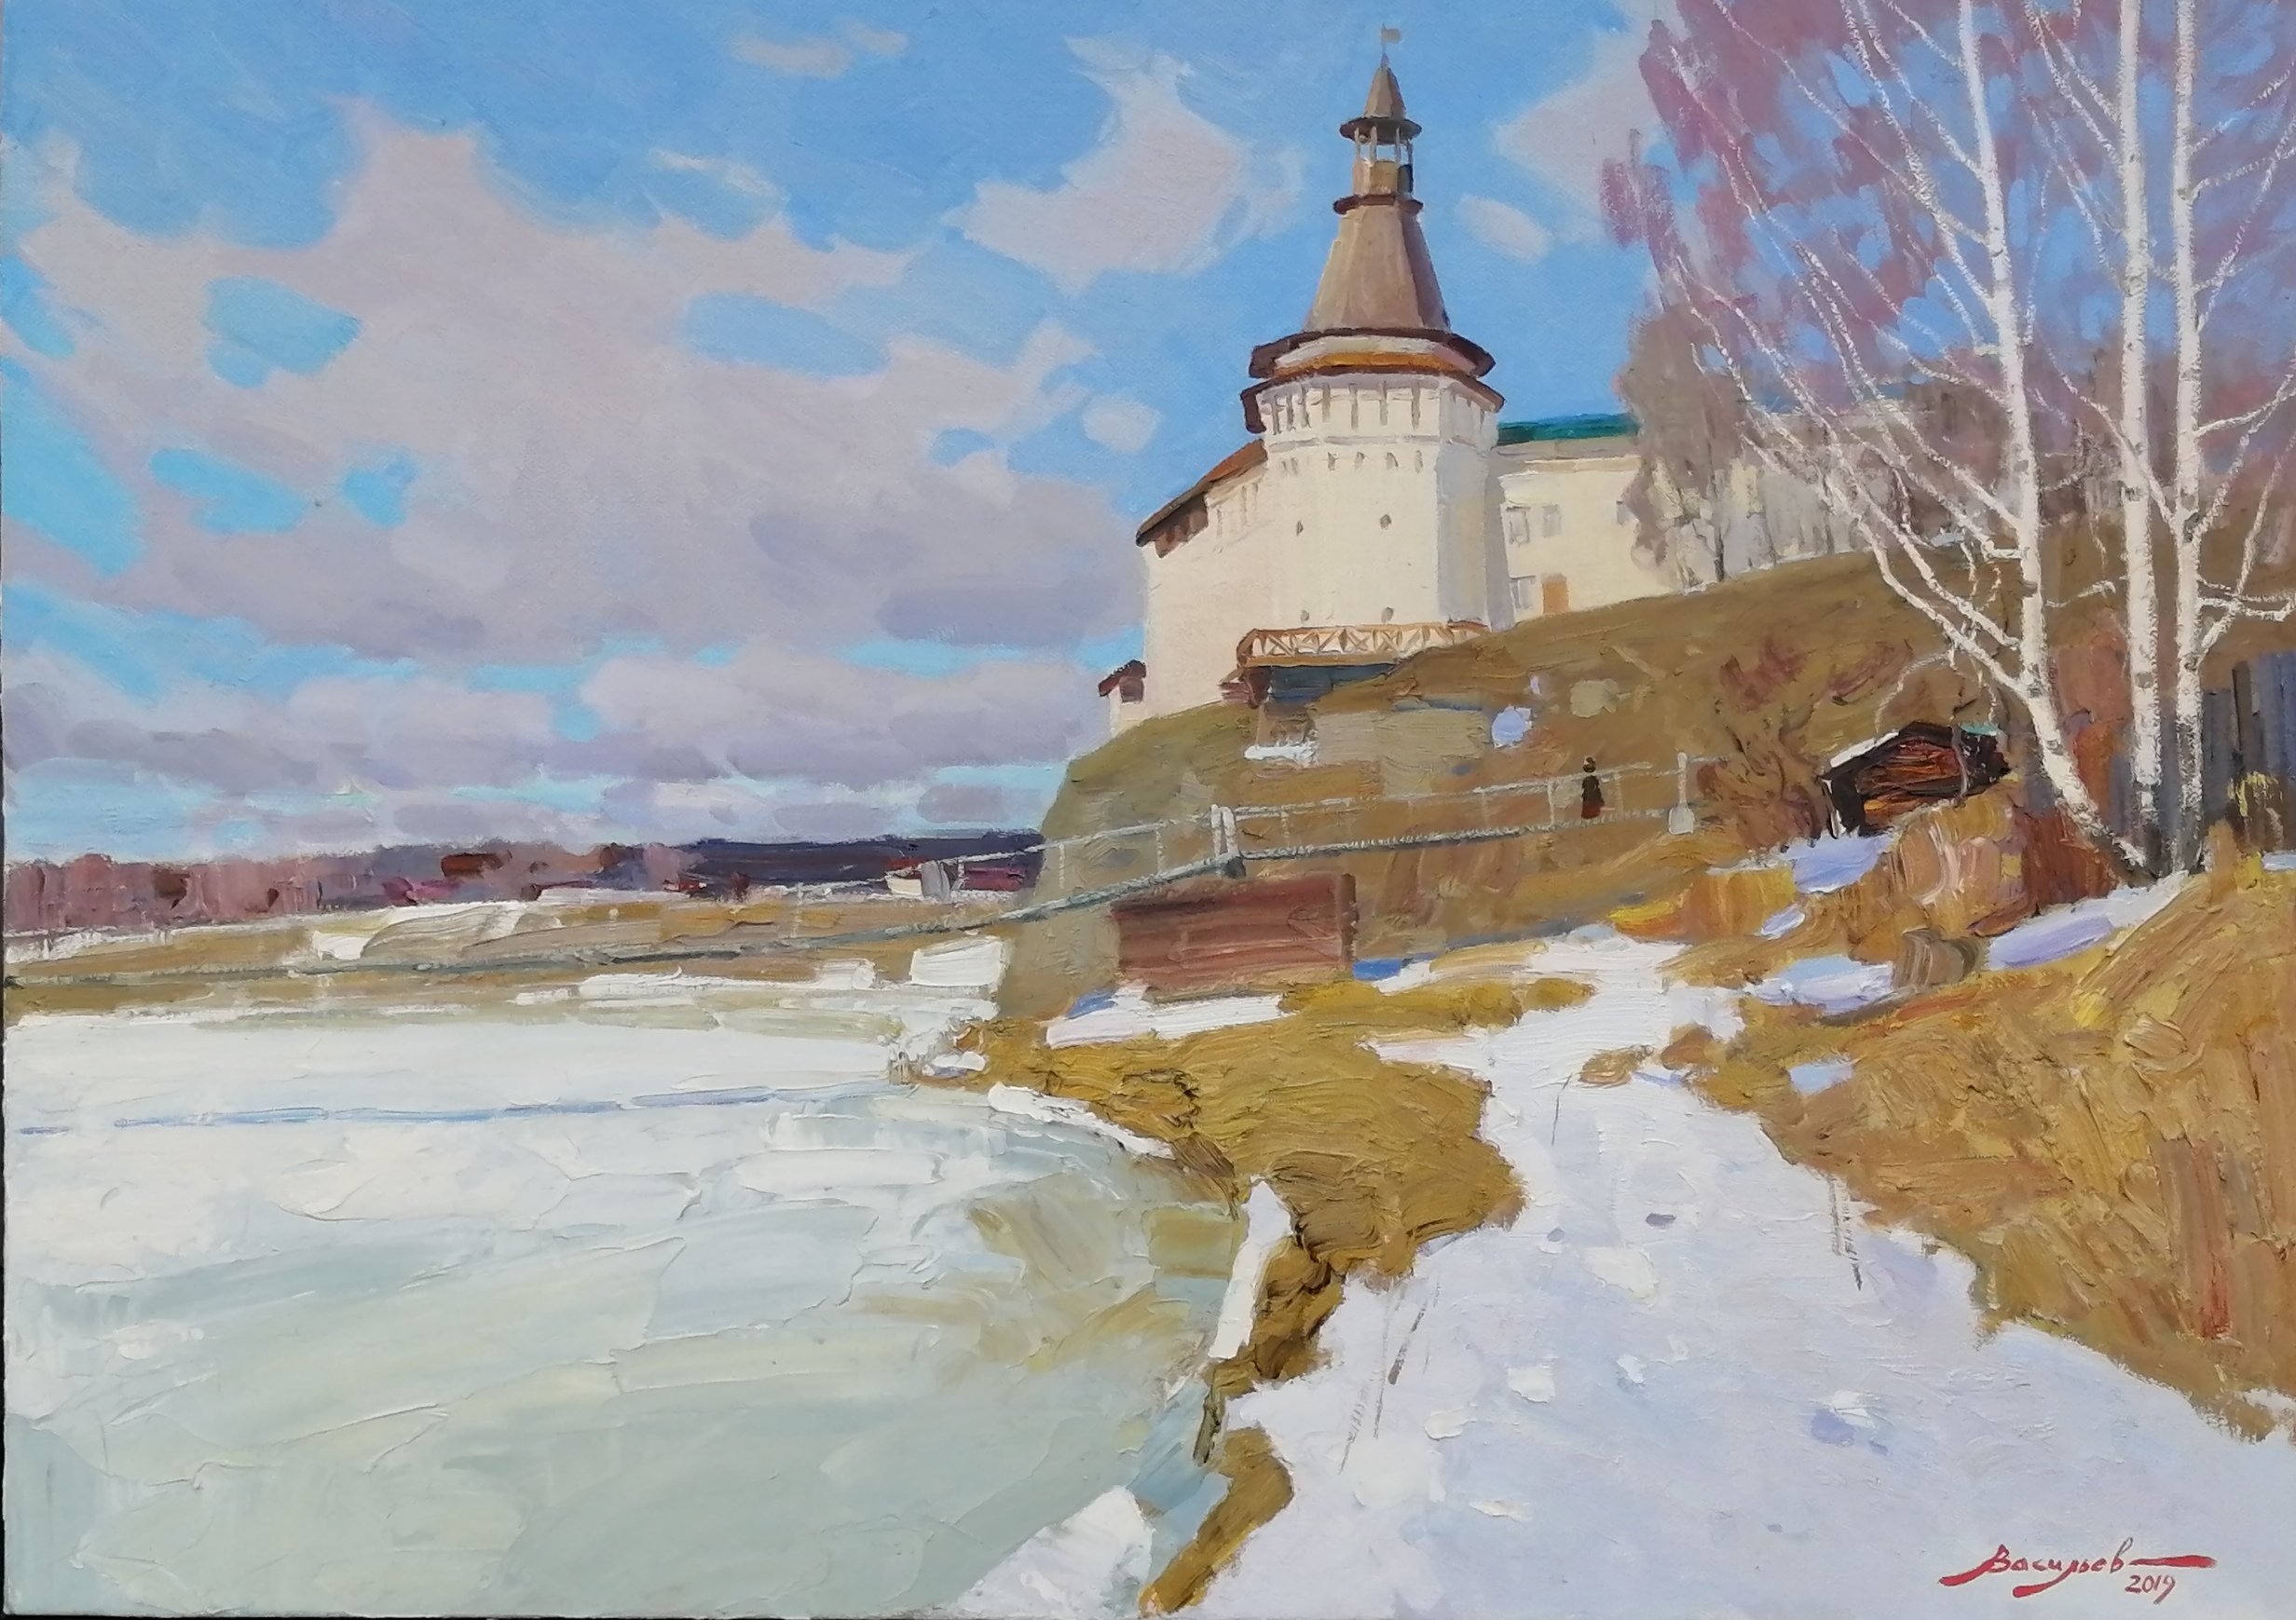 Early spring. Verkhoturye - 1, Dmitry Vasiliev, Buy the painting Oil